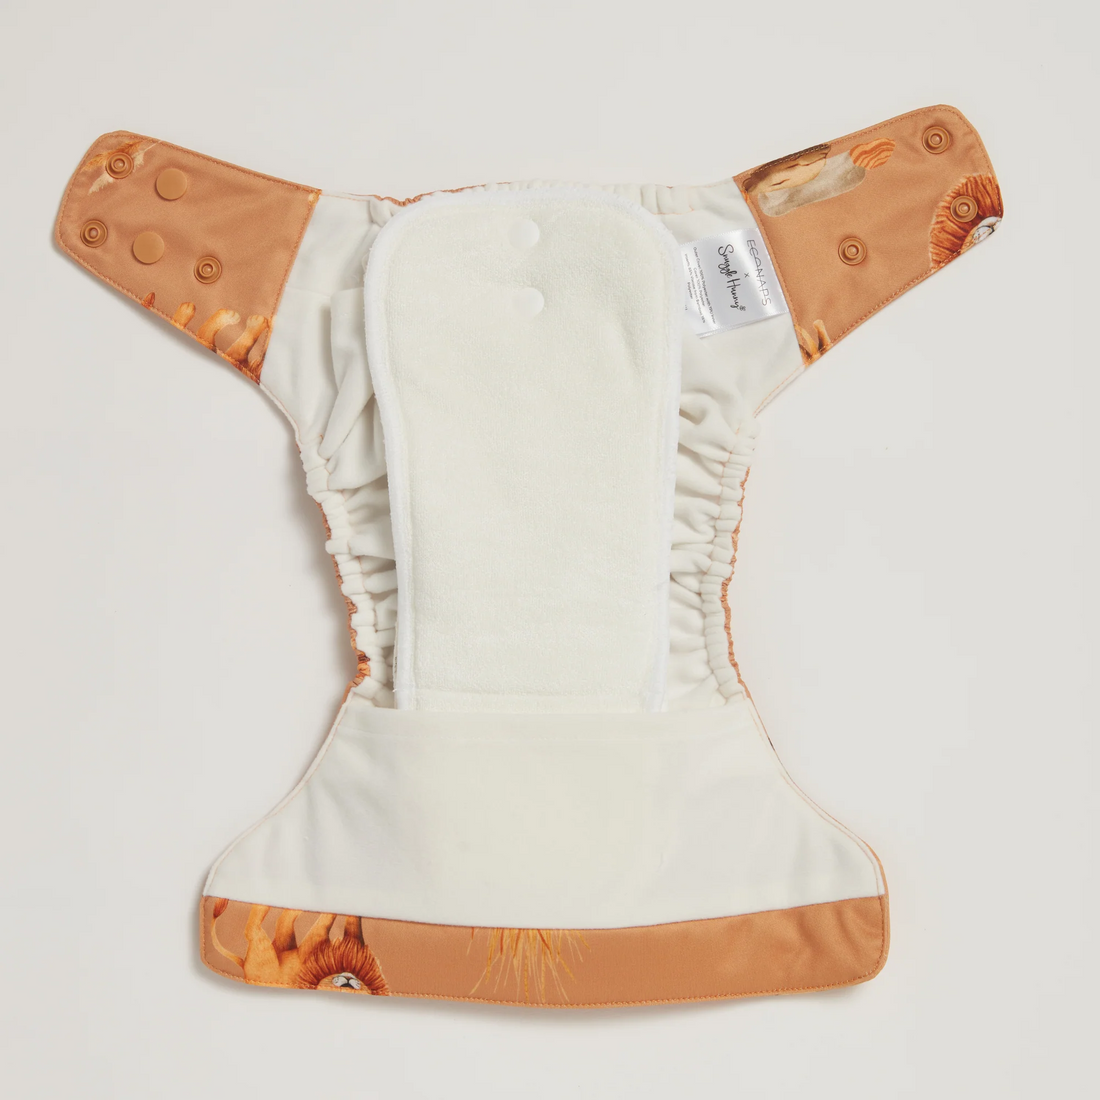 Snuggle Hunny Roar 2.0 Modern Cloth Diaper